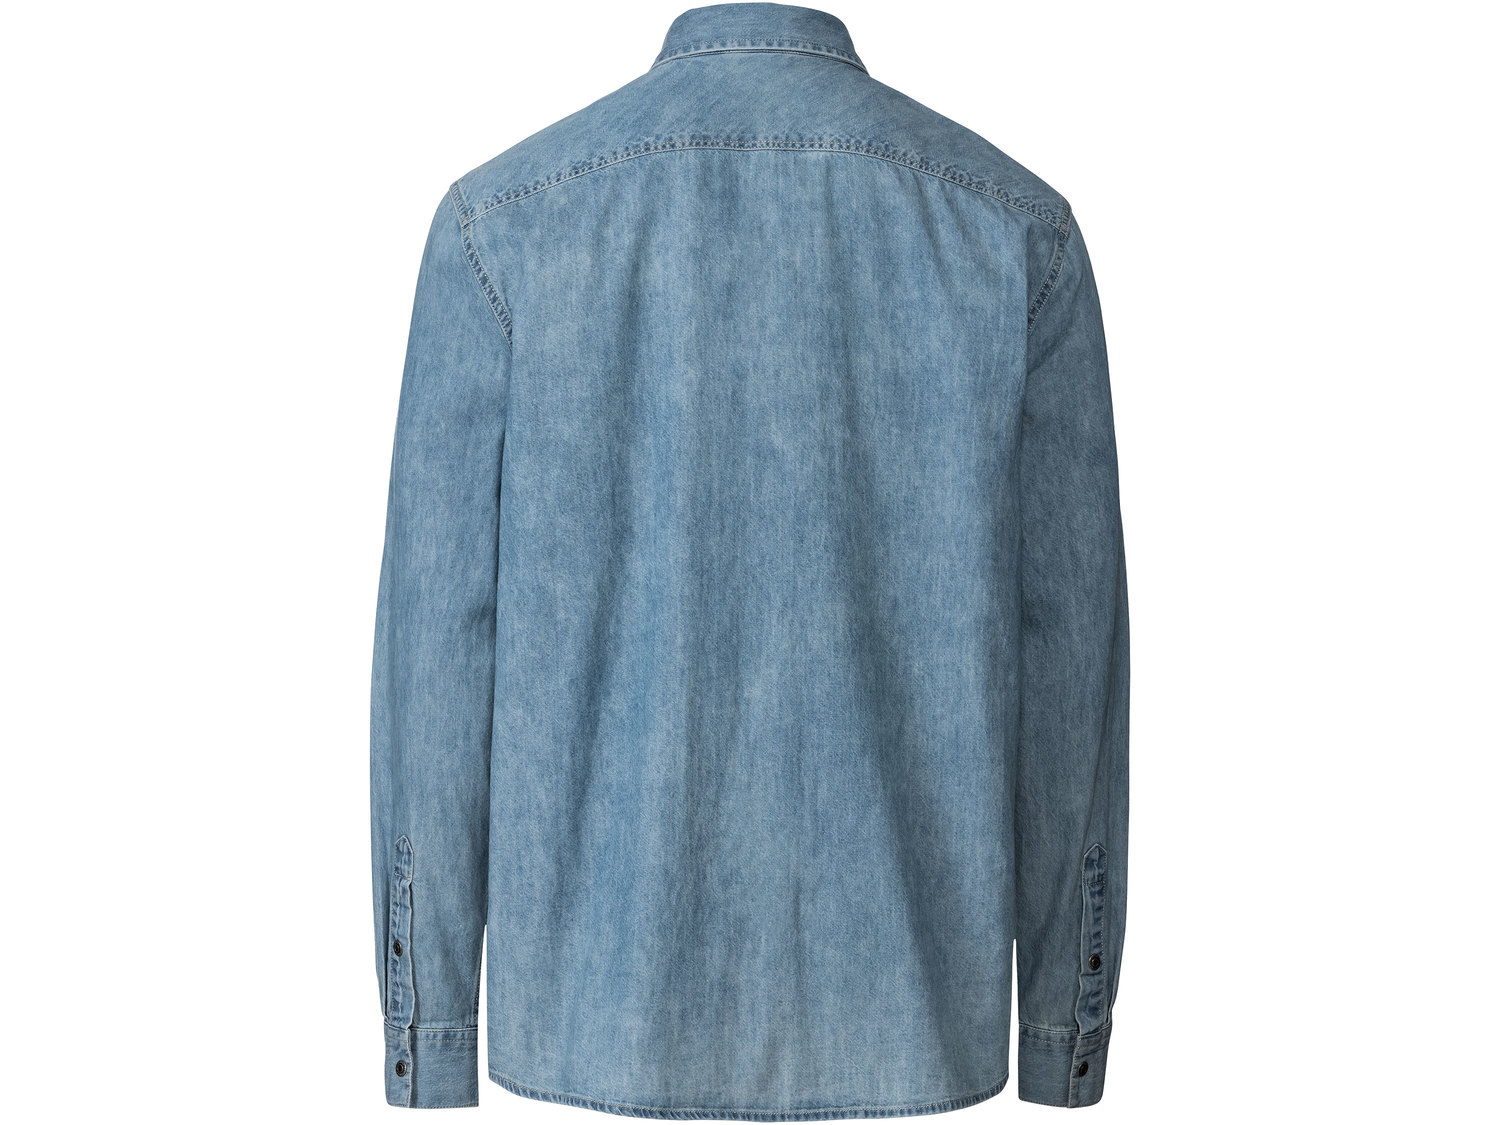 Koszula jeansowa Livergy, cena 39,99 PLN 
- 100% bawełny
- rozmiary: M-XXL
- Hohenstein ...